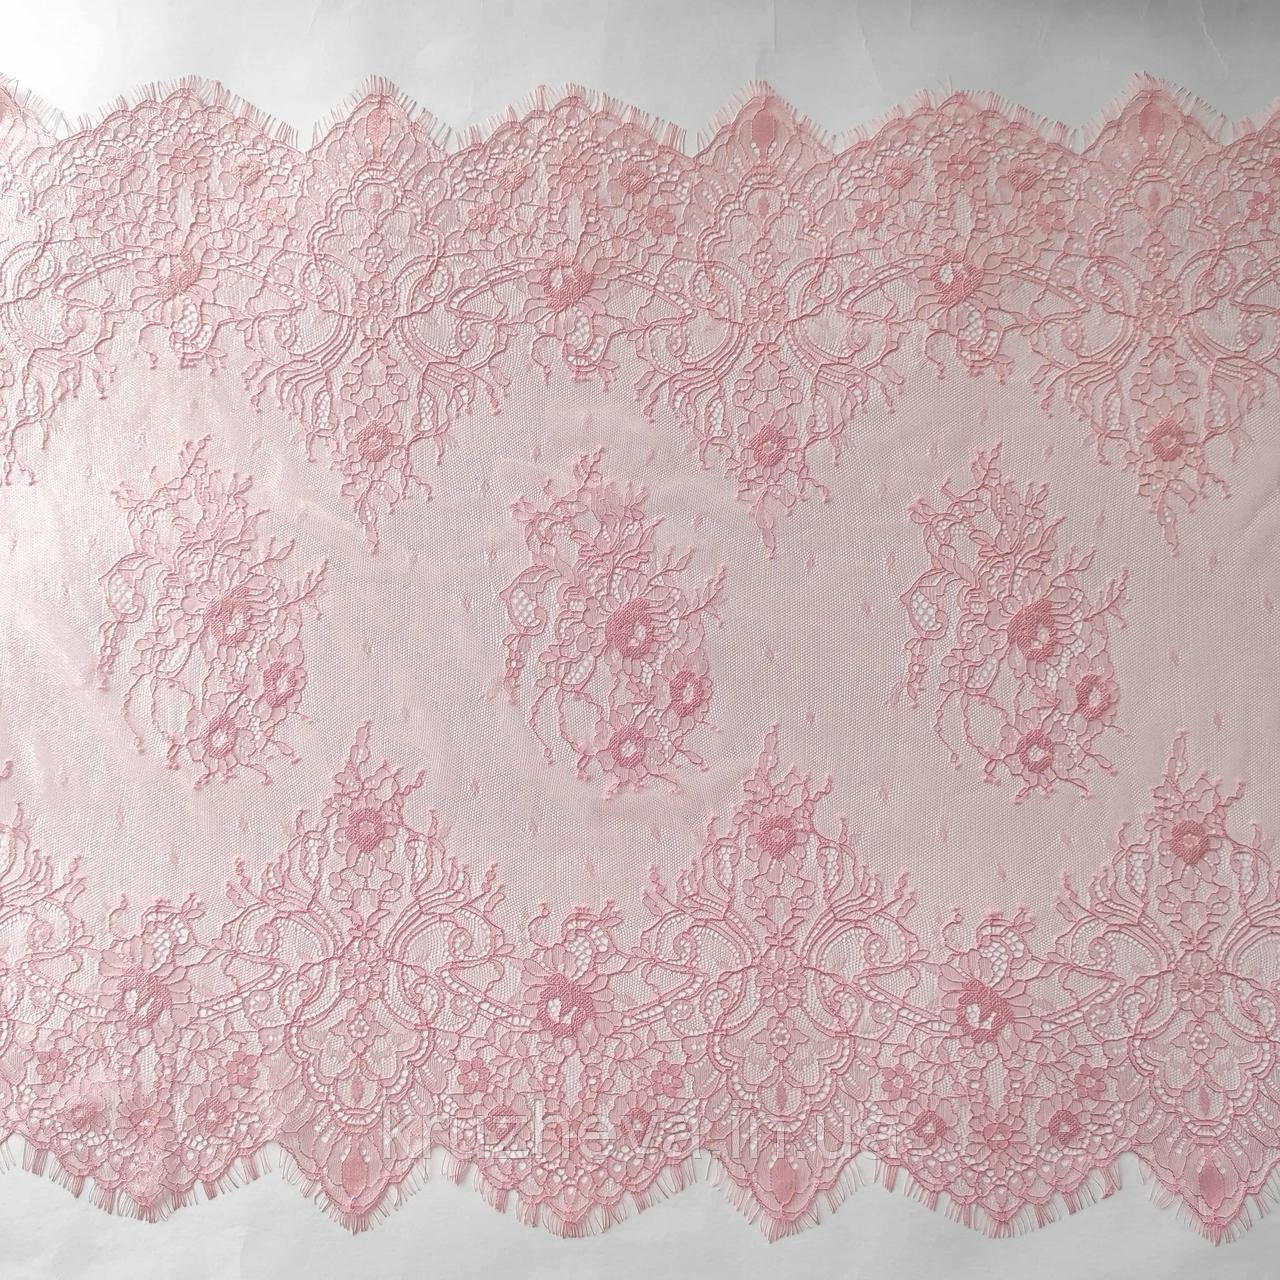 Ажурне французьке мереживо шантильї (з війками) рожевого кольору шириною 51 см, довжина купона 1,4 м.